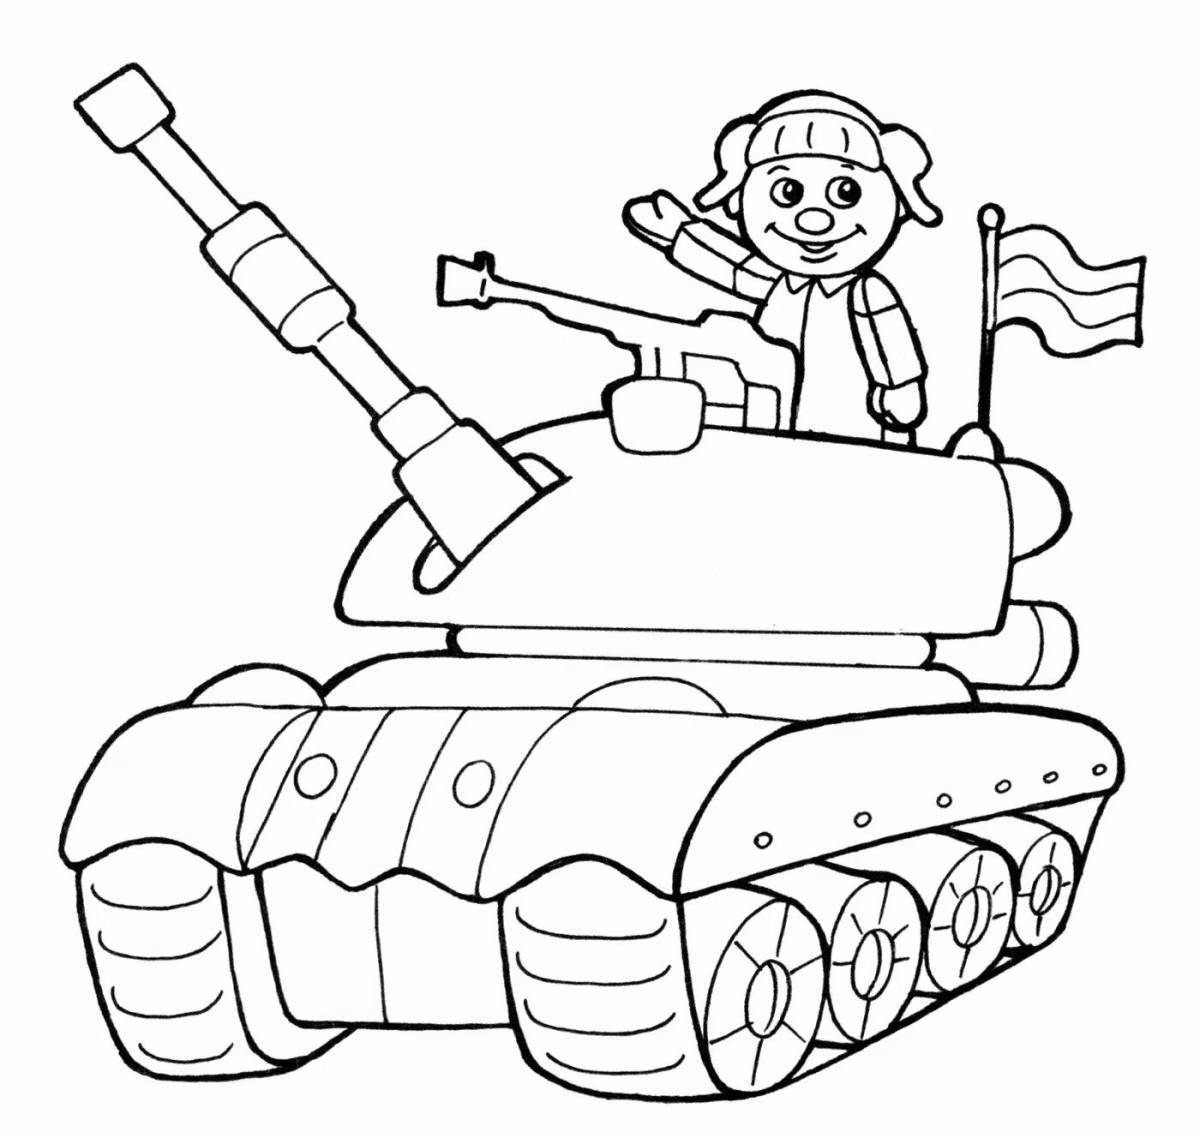 Surreal tankman coloring book